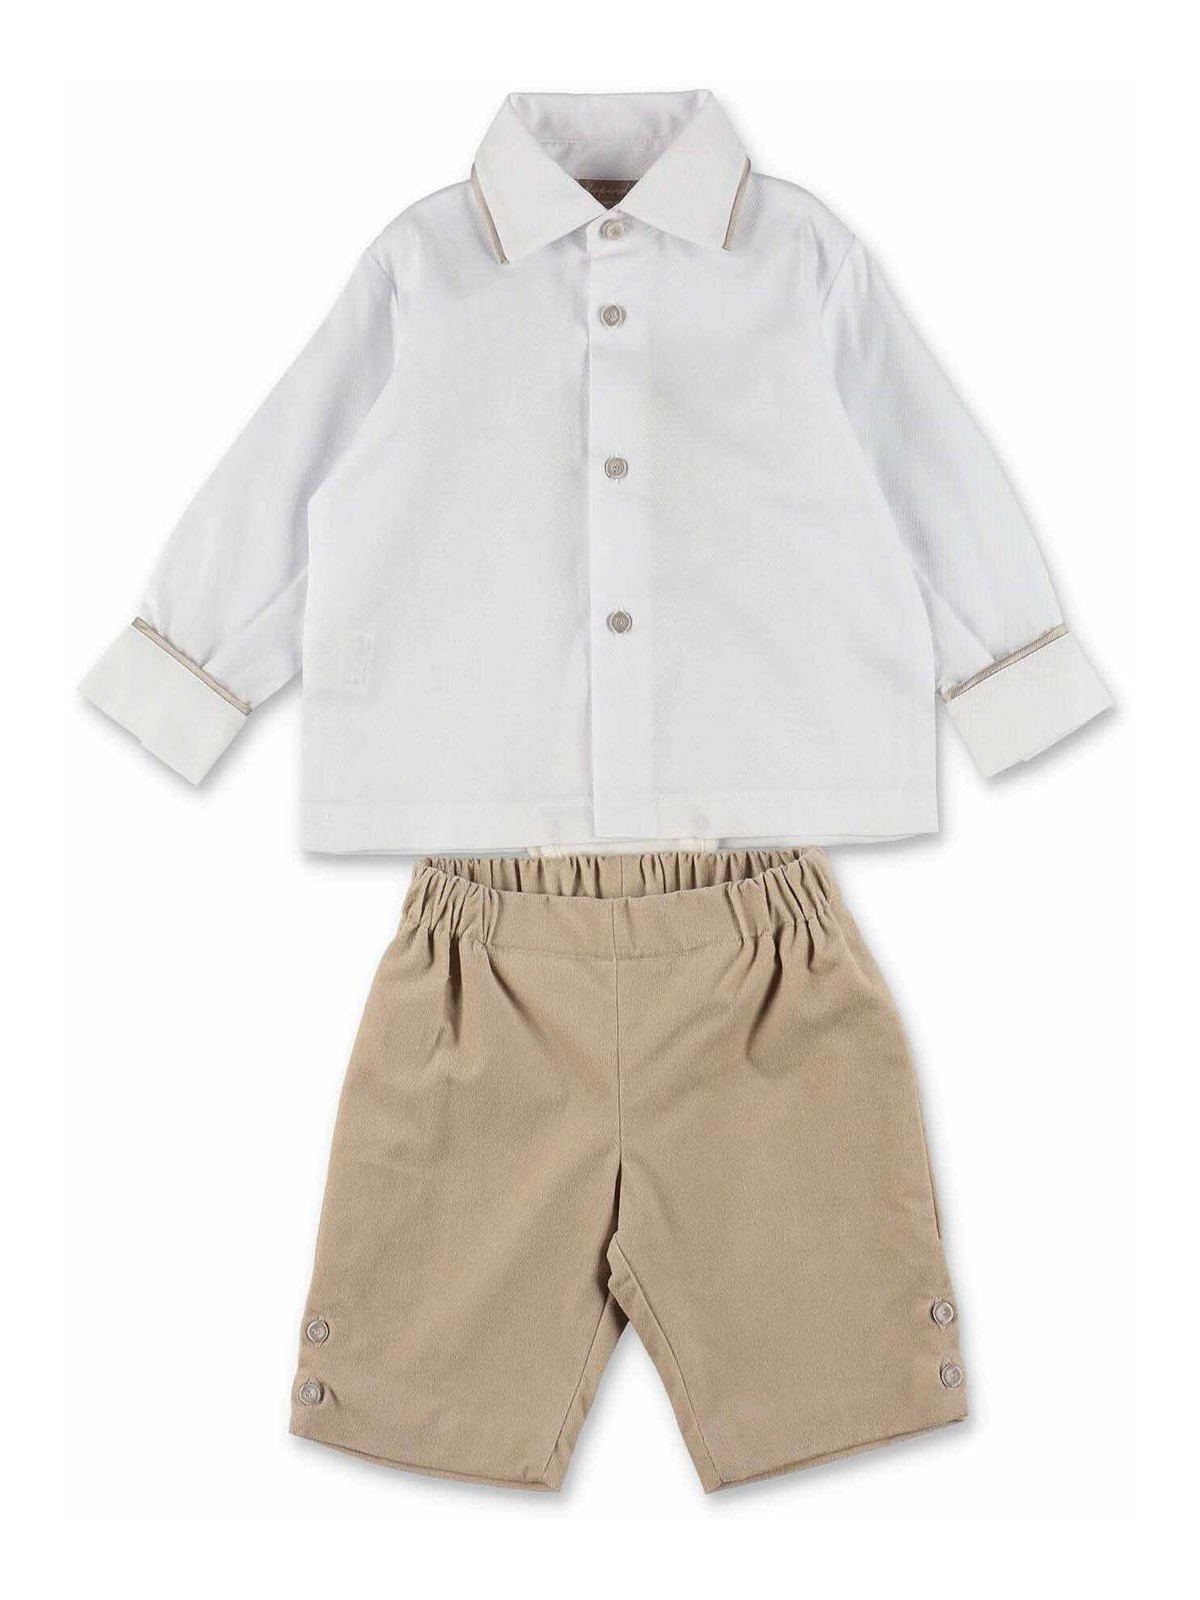 Crew Neck Long Sleeve Basic Baby Boy Shirt and Trousers 2-Piece Set  -S44370Z1-Q6K - S44370Z1-Q6K - LC Waikiki